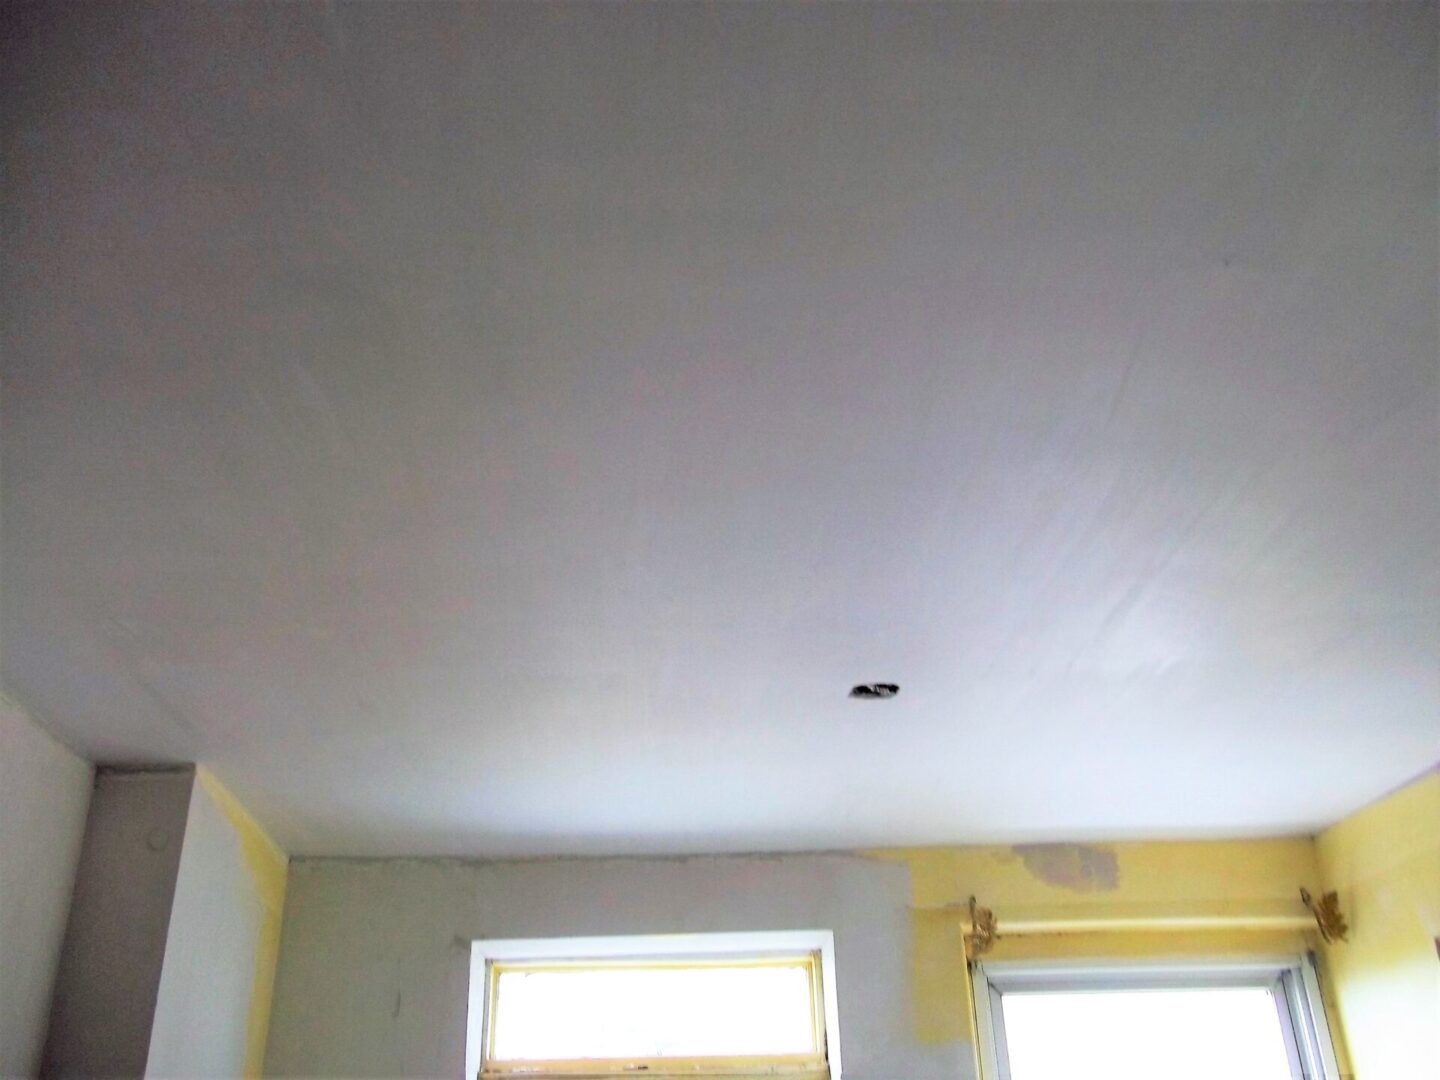 Finished ceiling coating white